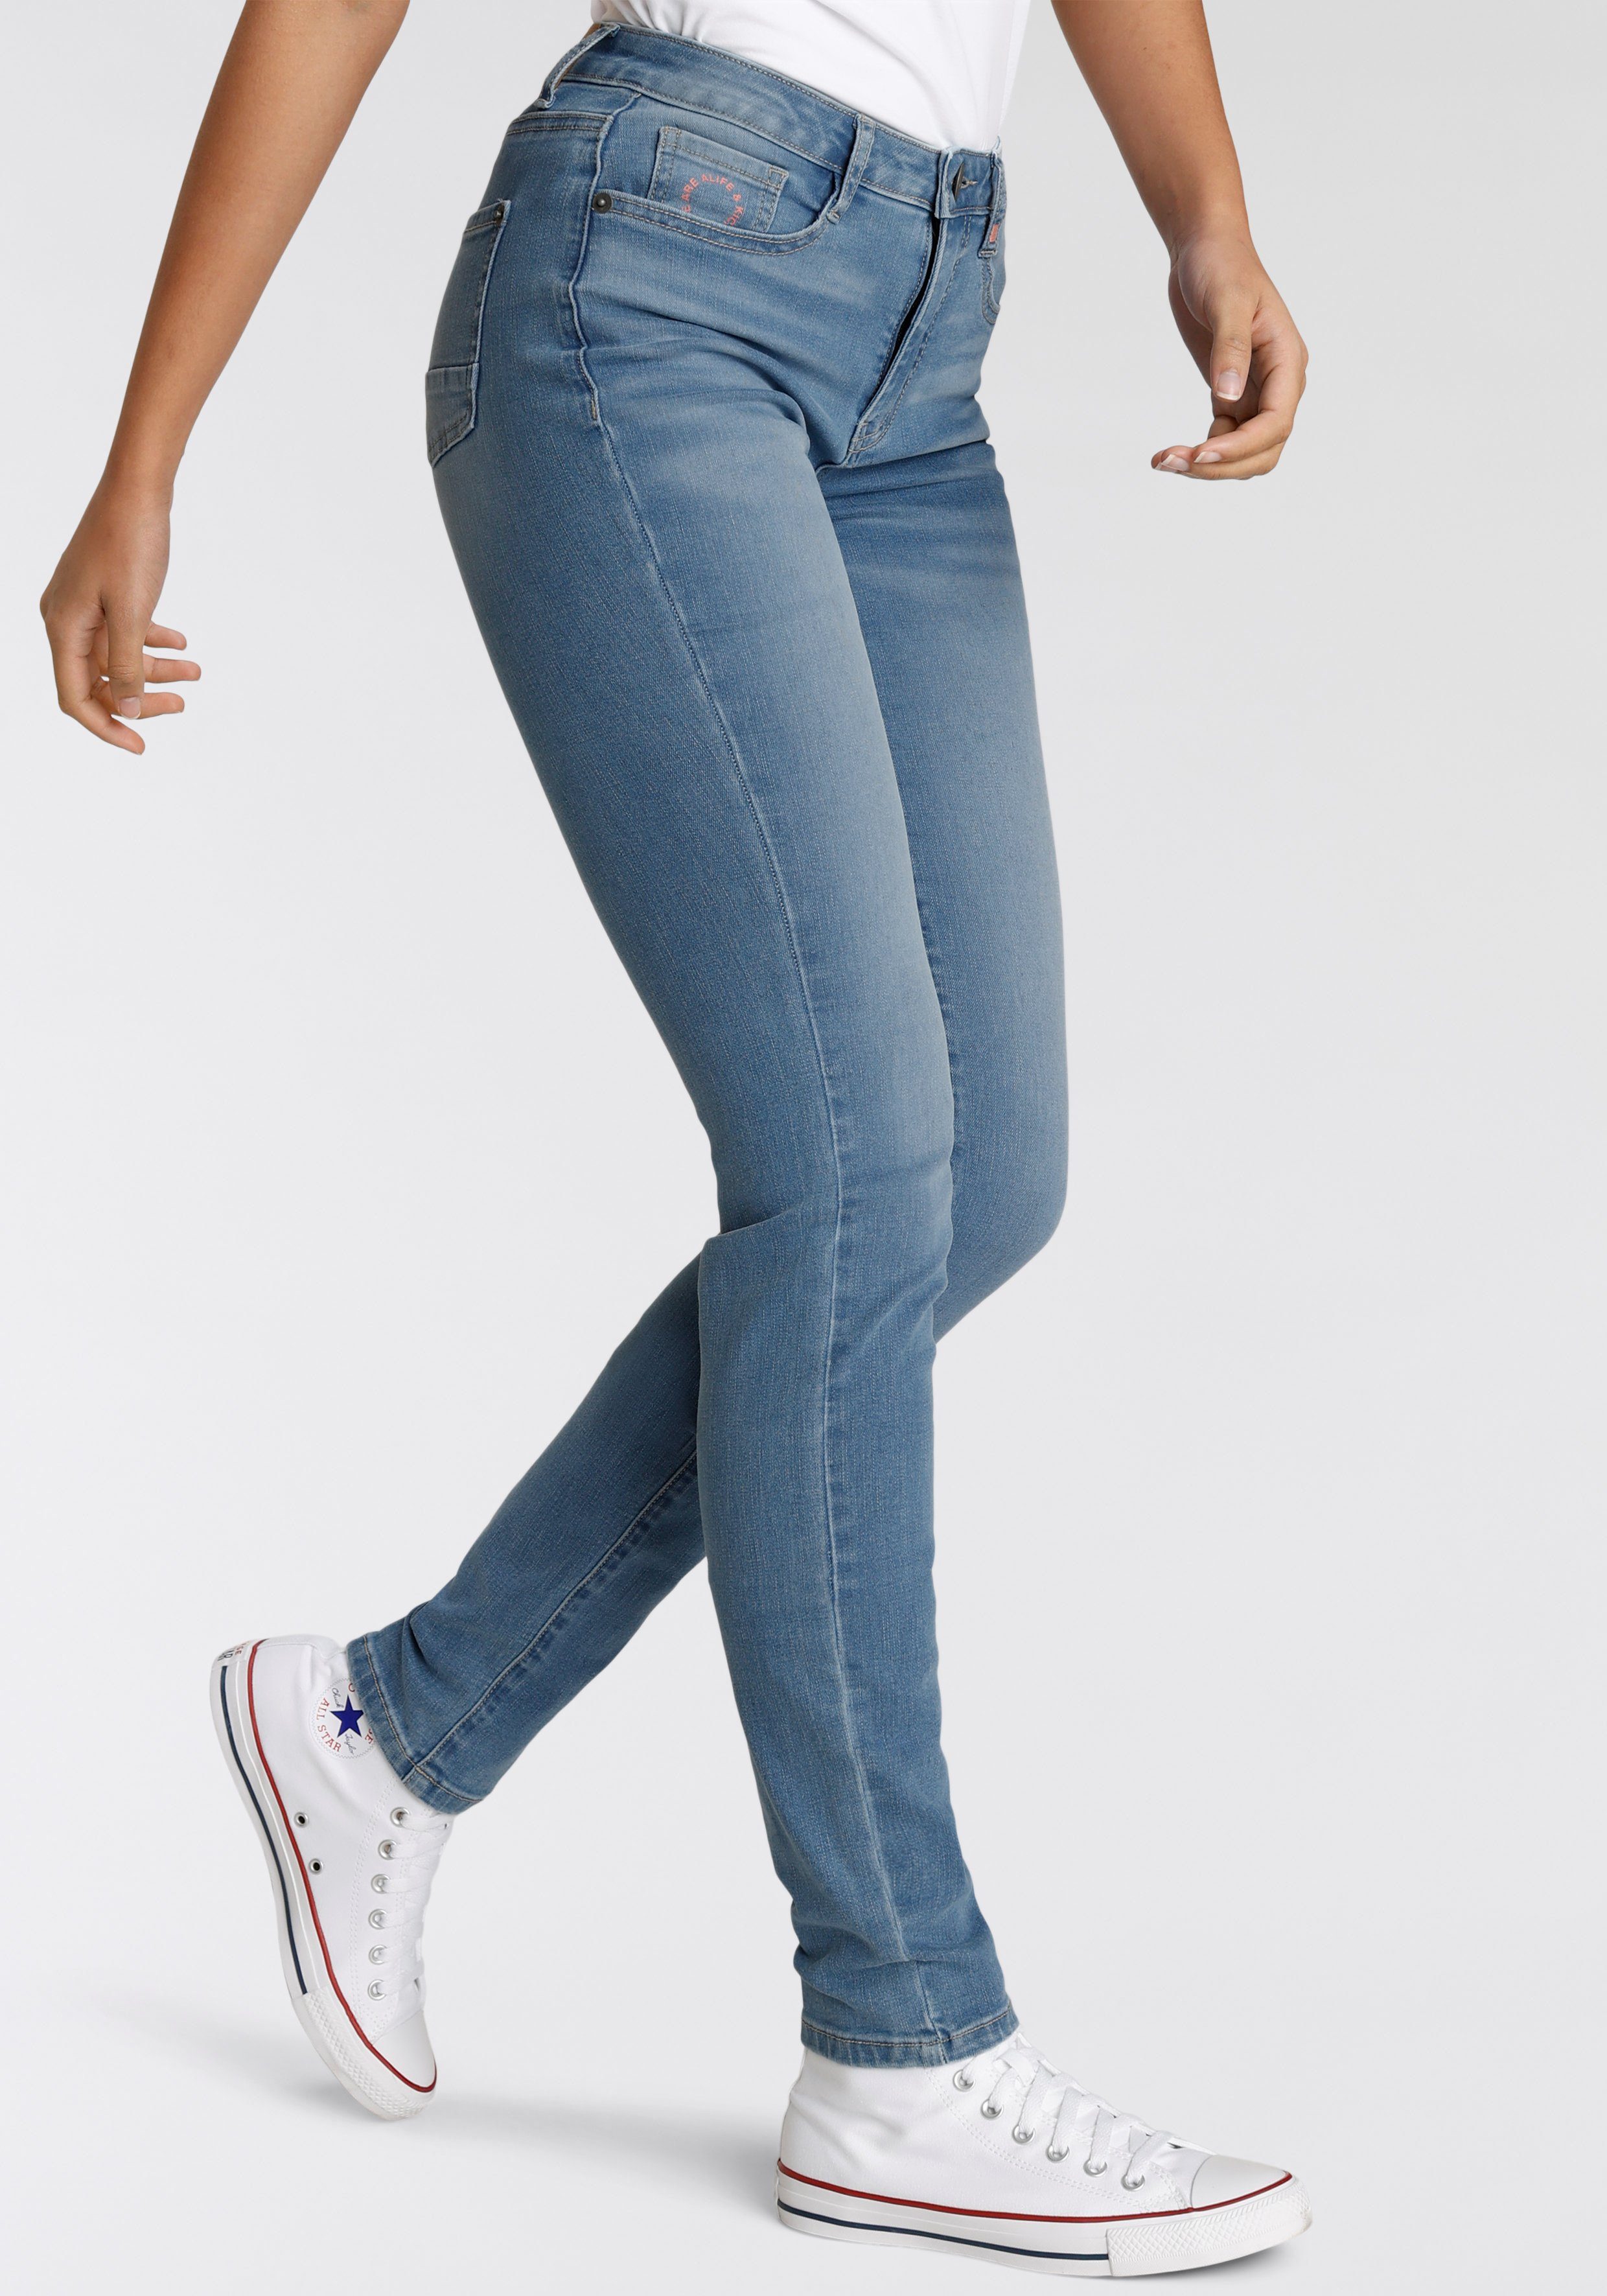 Alife & Kickin High-waist-Jeans Slim-Fit KOLLEKTION NEUE used blue NolaAK